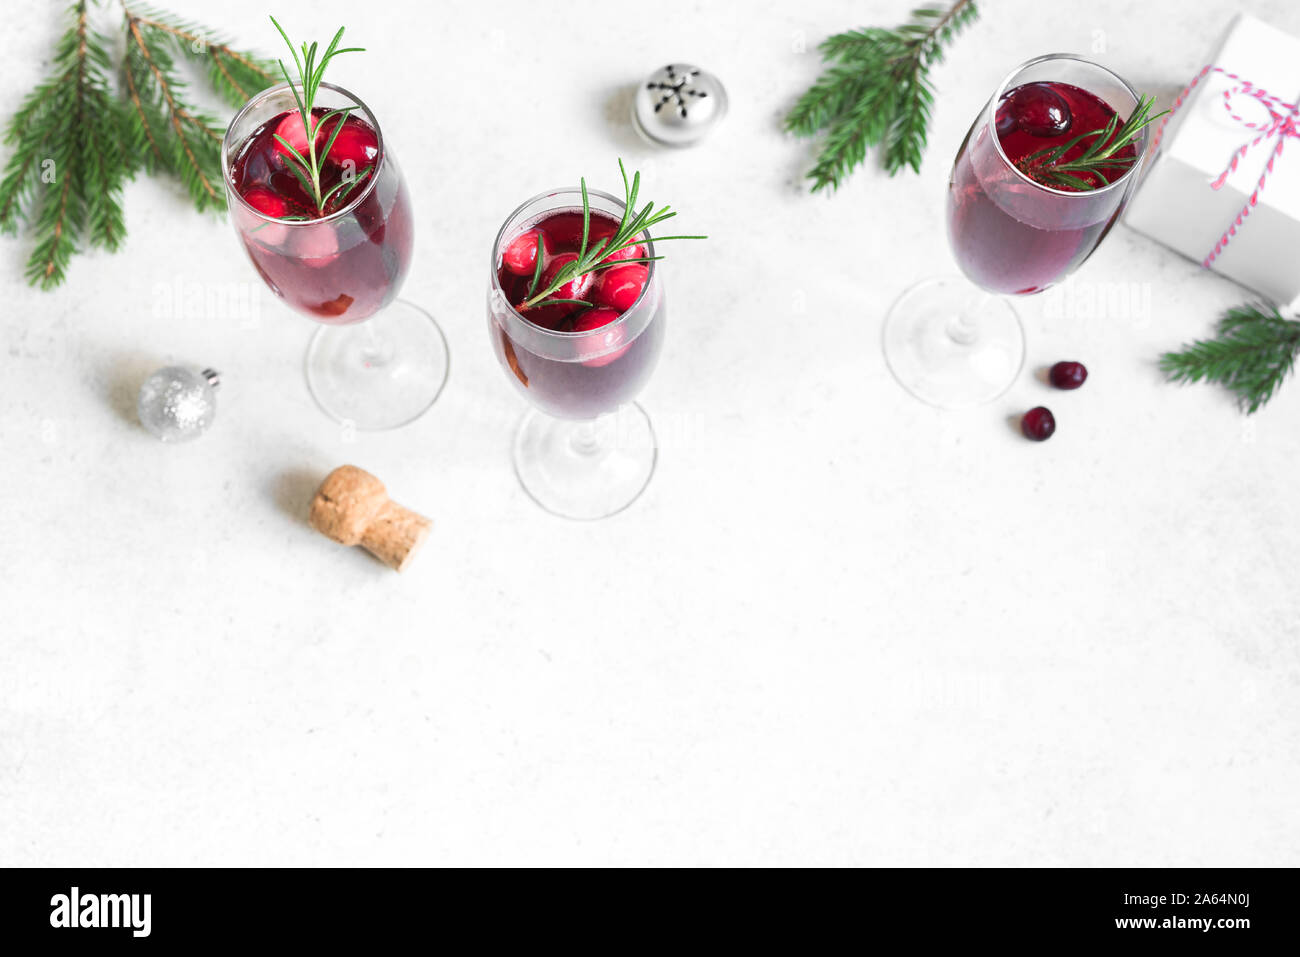 Weihnachten rote cranberry Mimosa mit Rosmarin auf weißem Hintergrund,  kopieren. Cocktail mit Sekt für Weihnachten Morgen Stockfotografie - Alamy